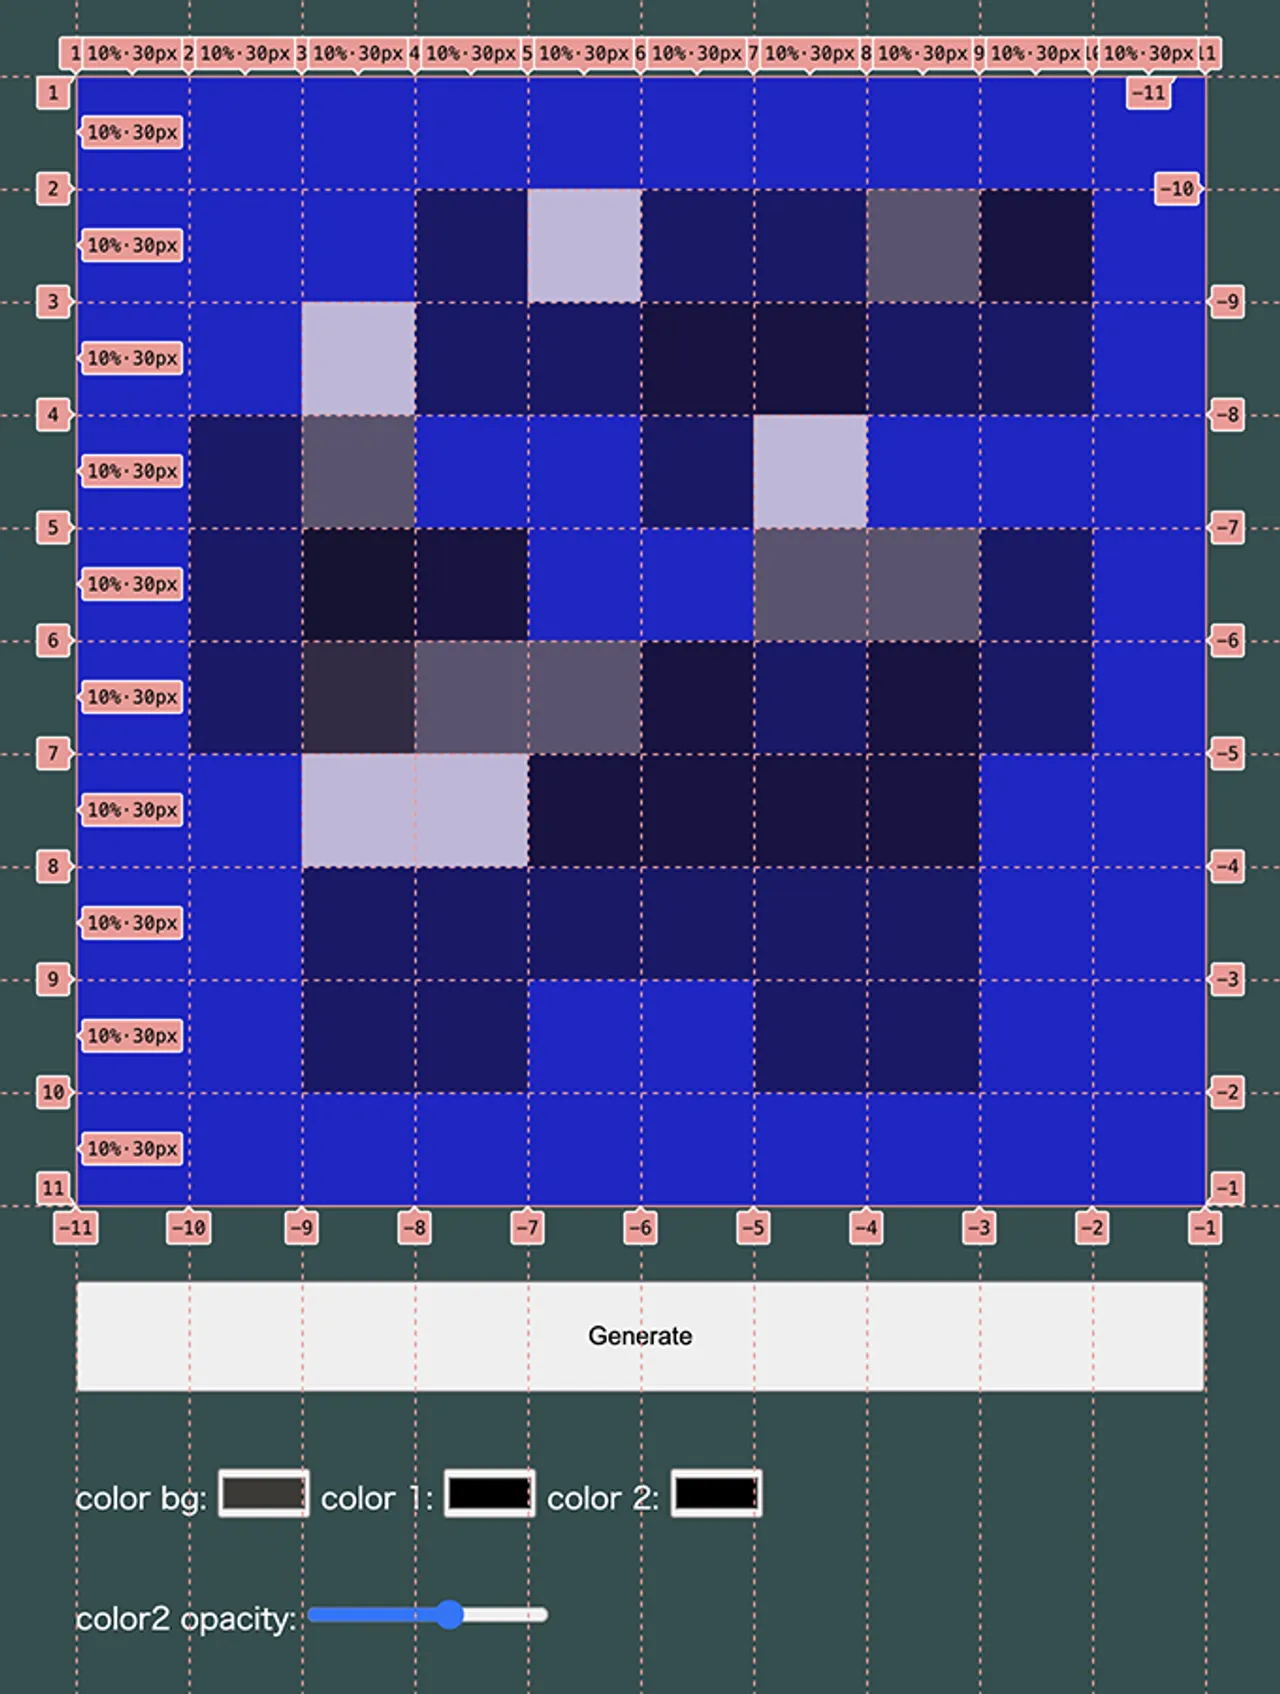 初期のプロトタイプのスクリーンショット。CSS Grid のガイドが表示されている